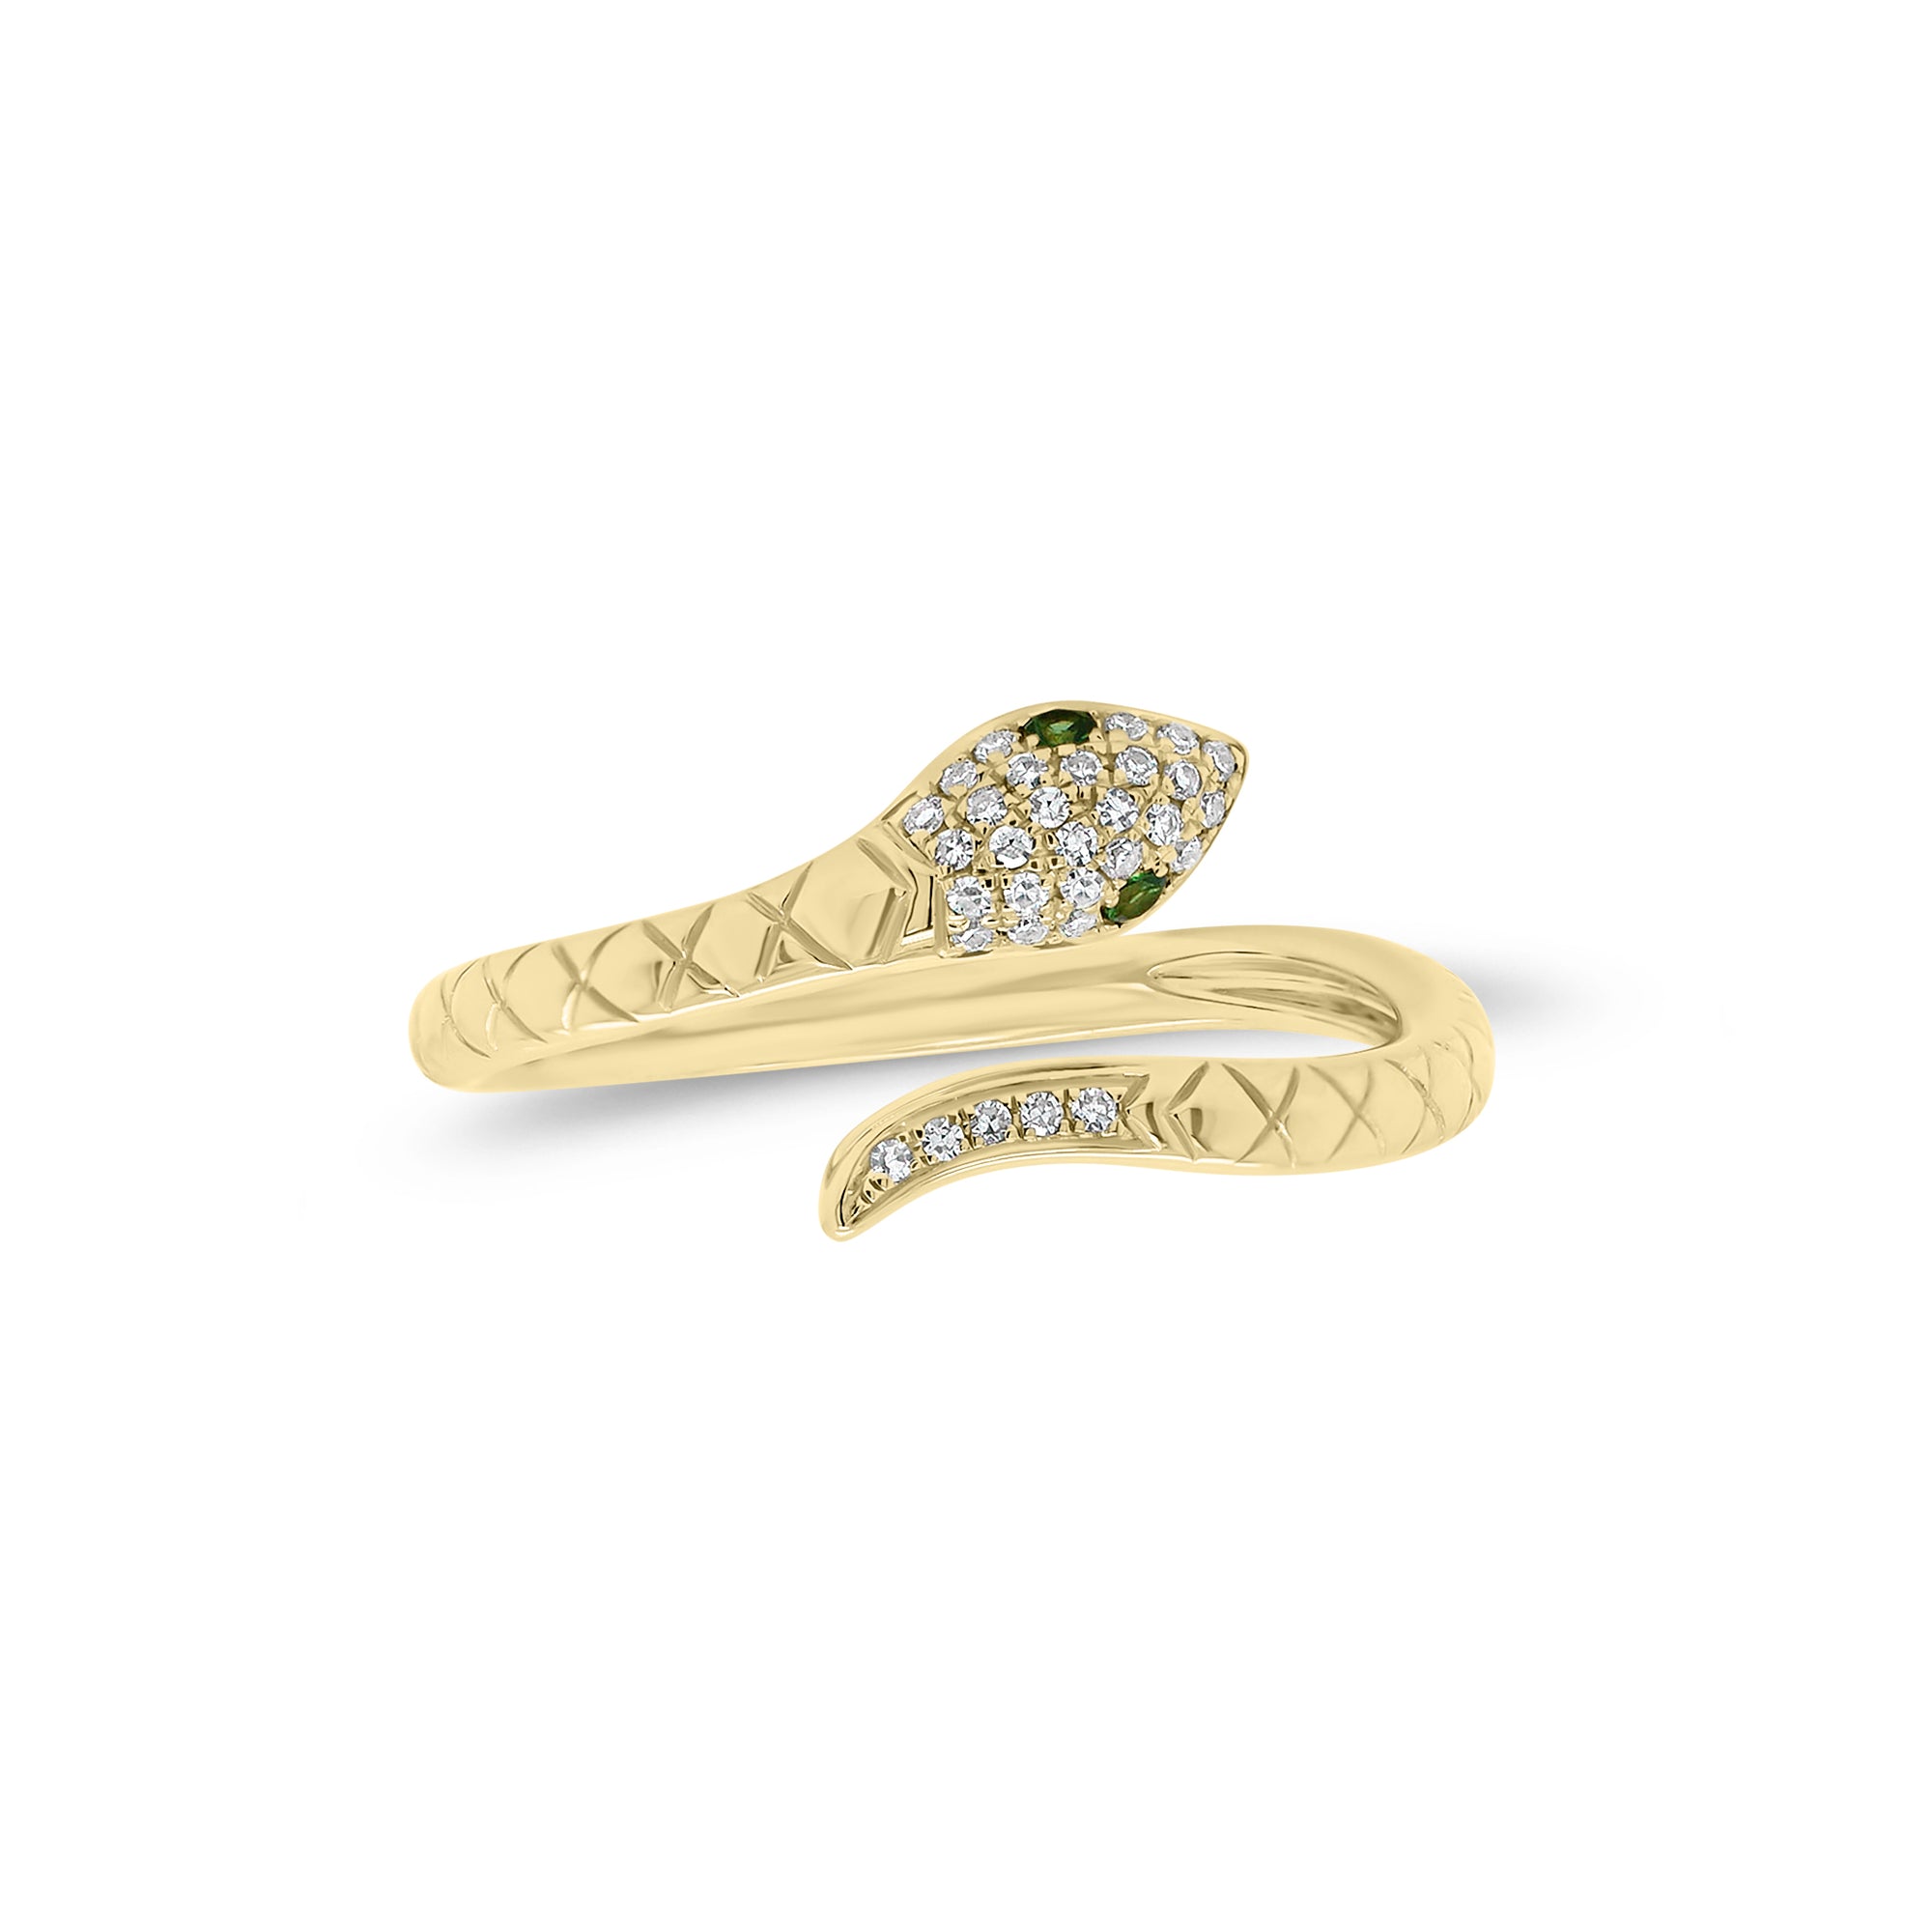 Diamond & Emerald Snake Ring - 14K gold weighing 2.80 grams  - 28 round diamonds weighing 0.07 carats  - 2 emeralds weighing 0.02 carats